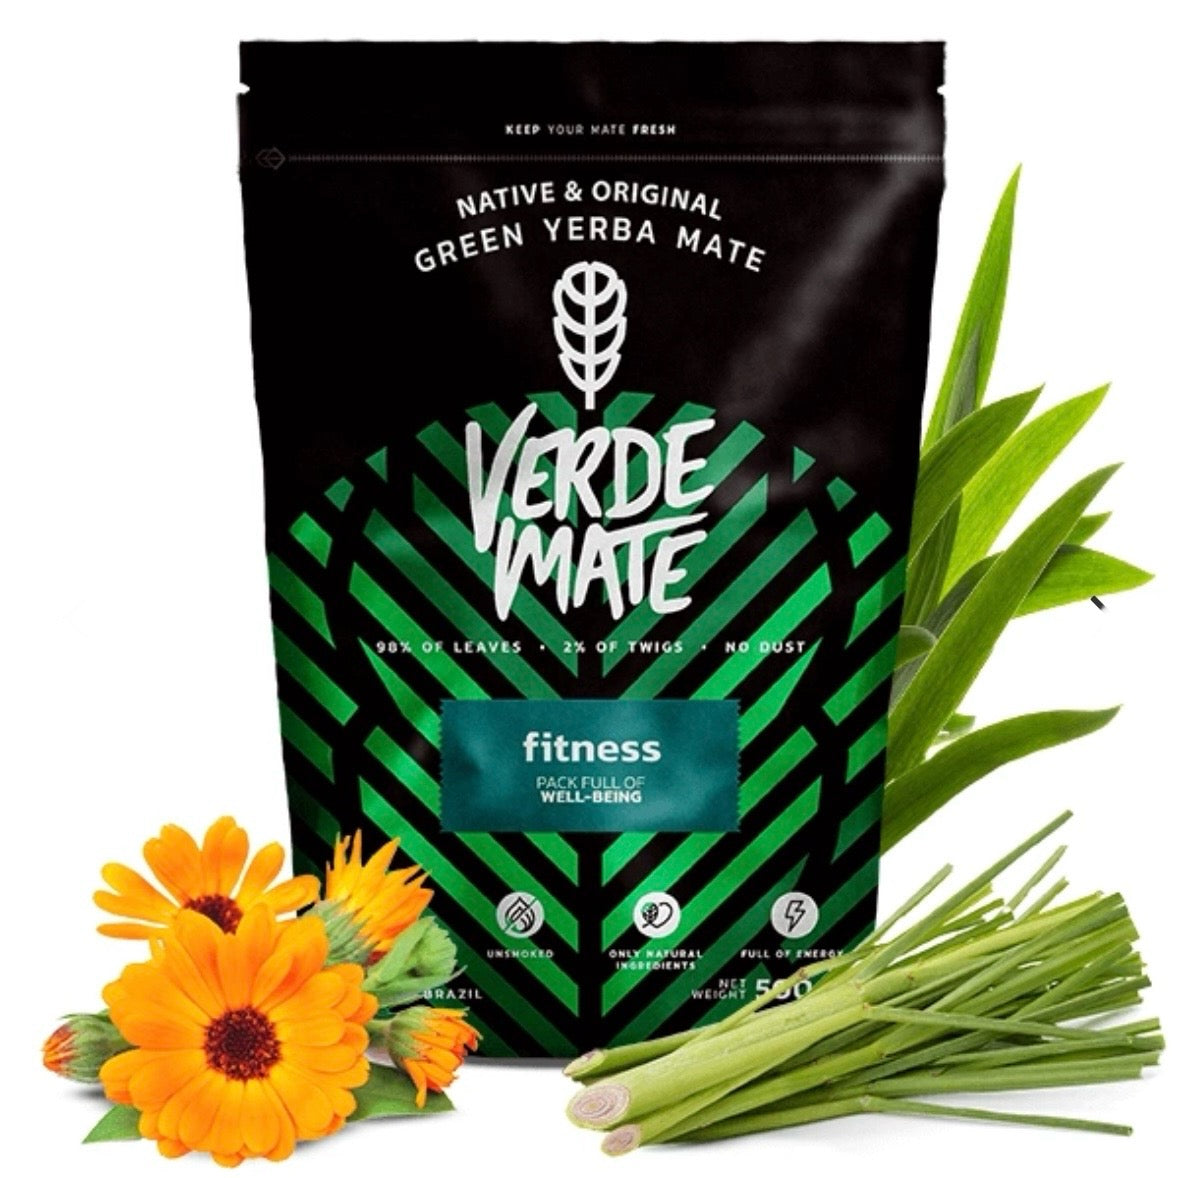 Verde Mate Fitness fiori ed erbe Pre allenamento - Yerba mate origine Brasile 500g